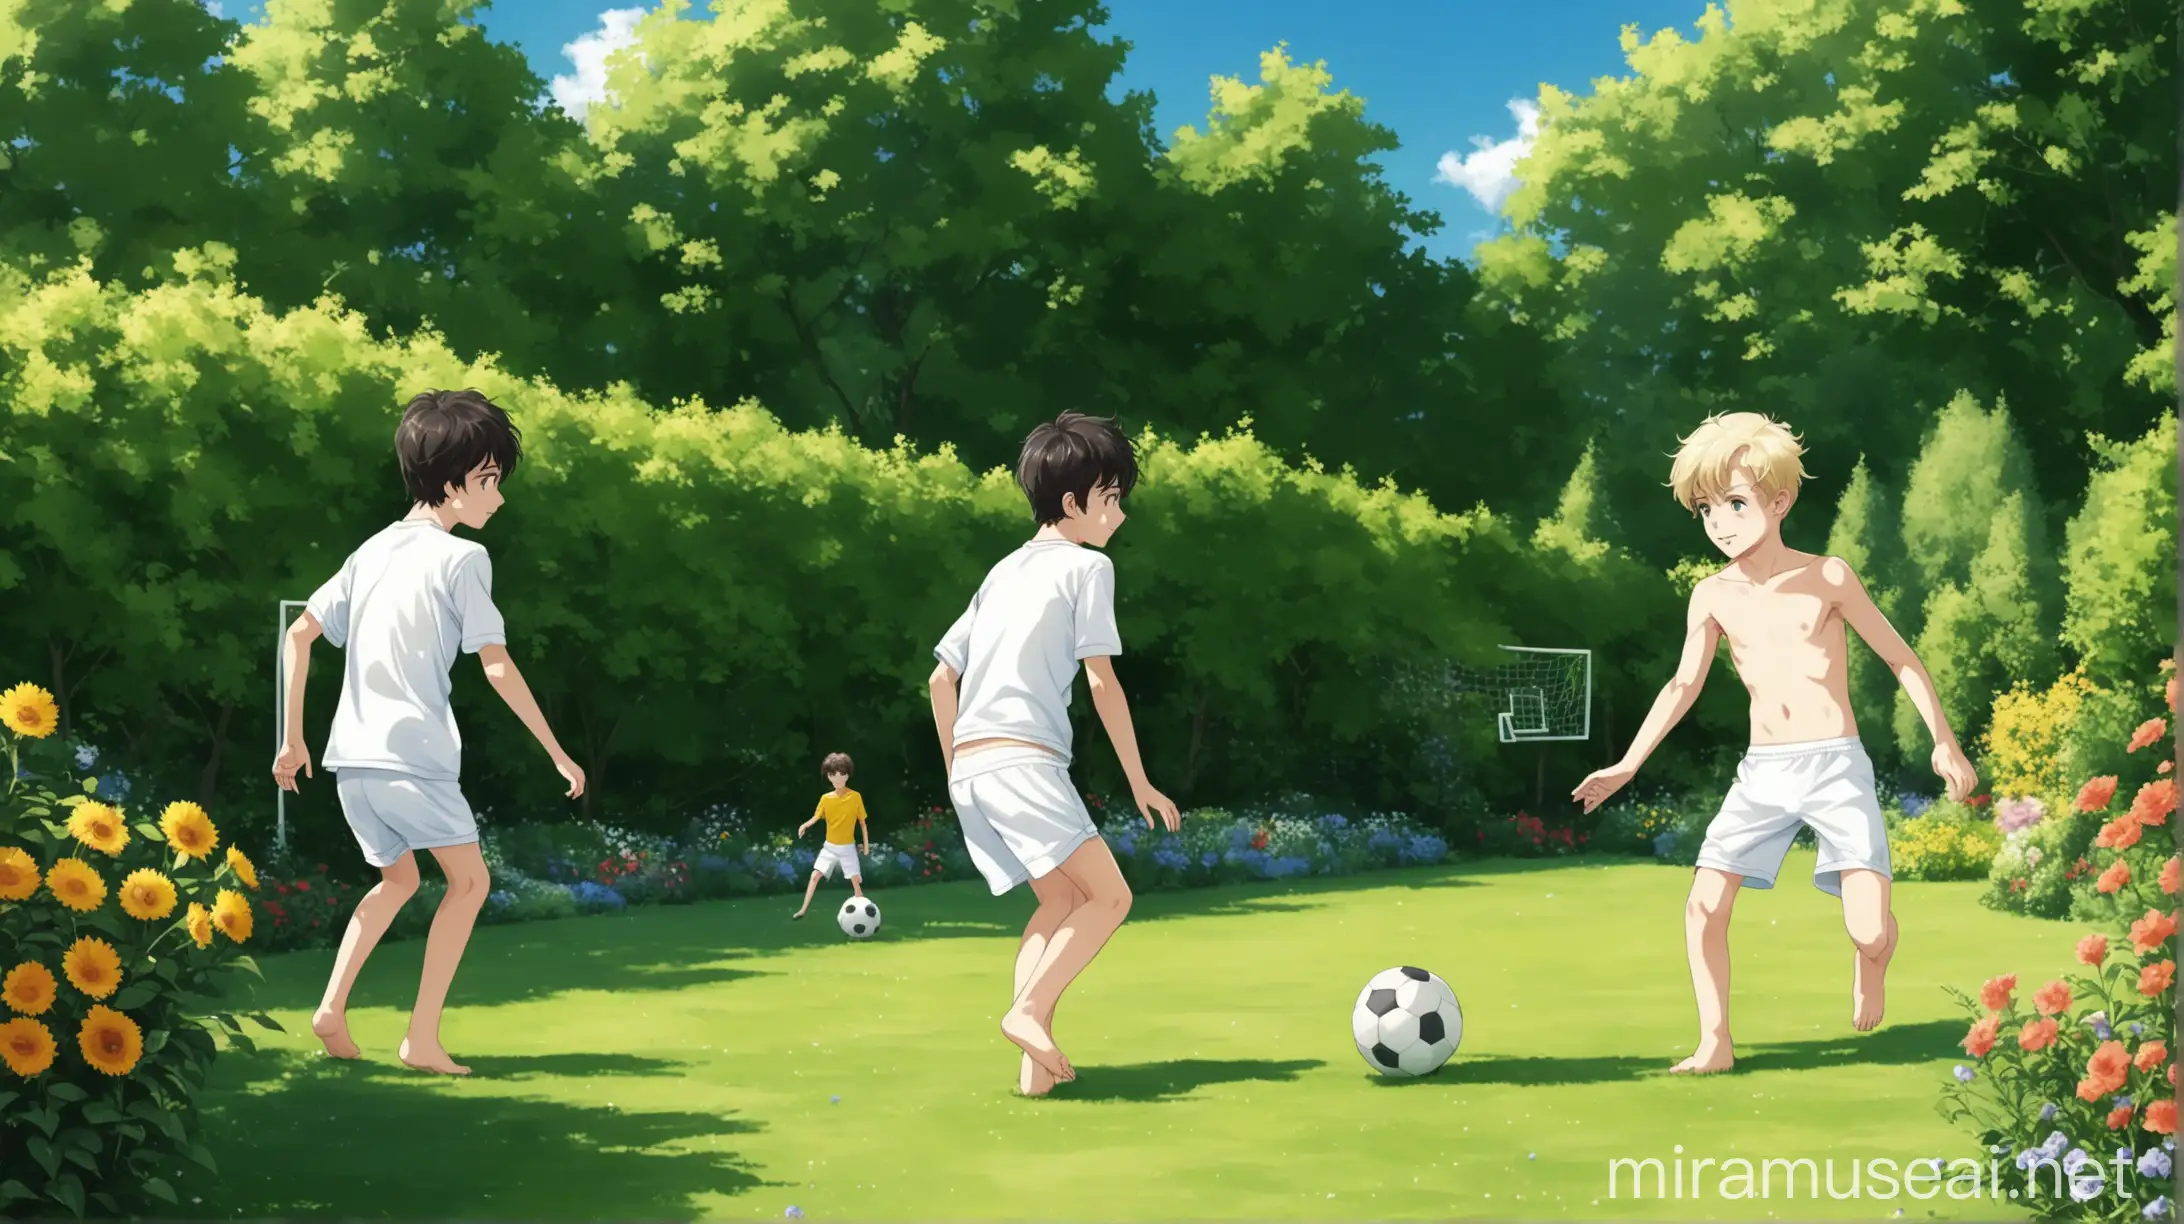 Teenage Boys Playing Football in Sunny Summer Garden